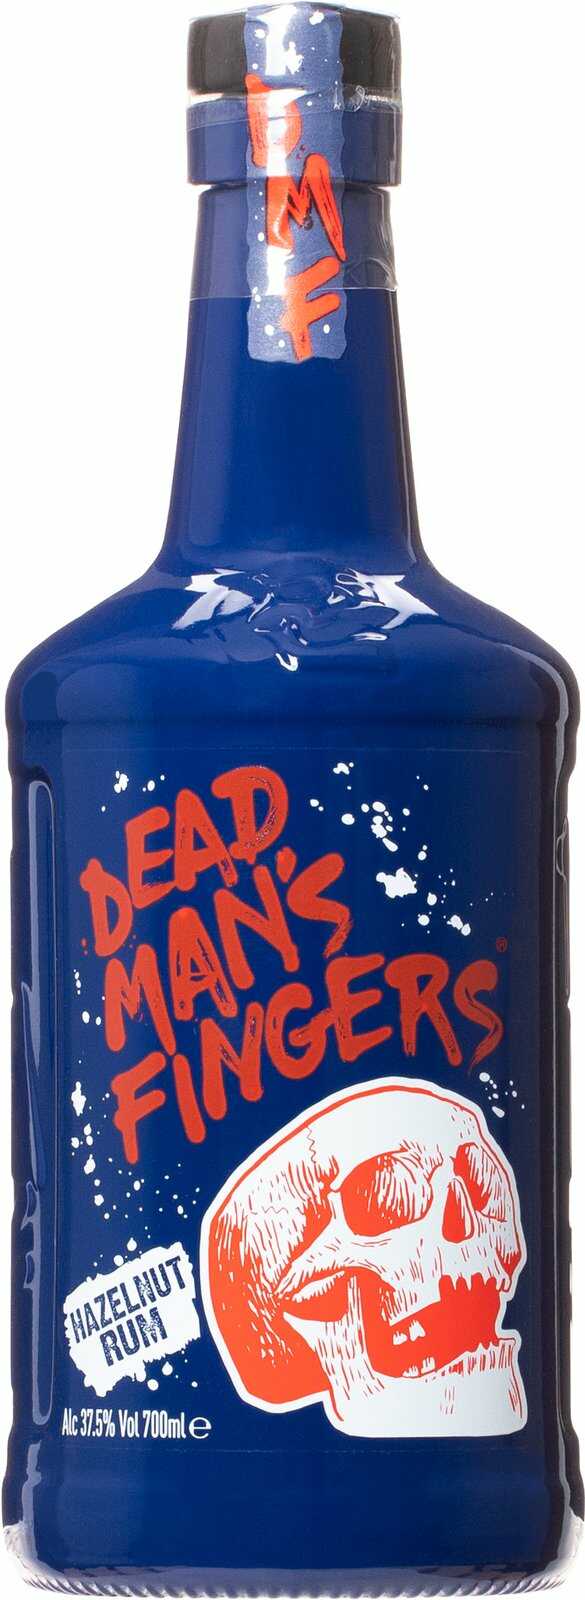 Dead Man's Fingers Hazelnut Rum 37,5% 0,7 l